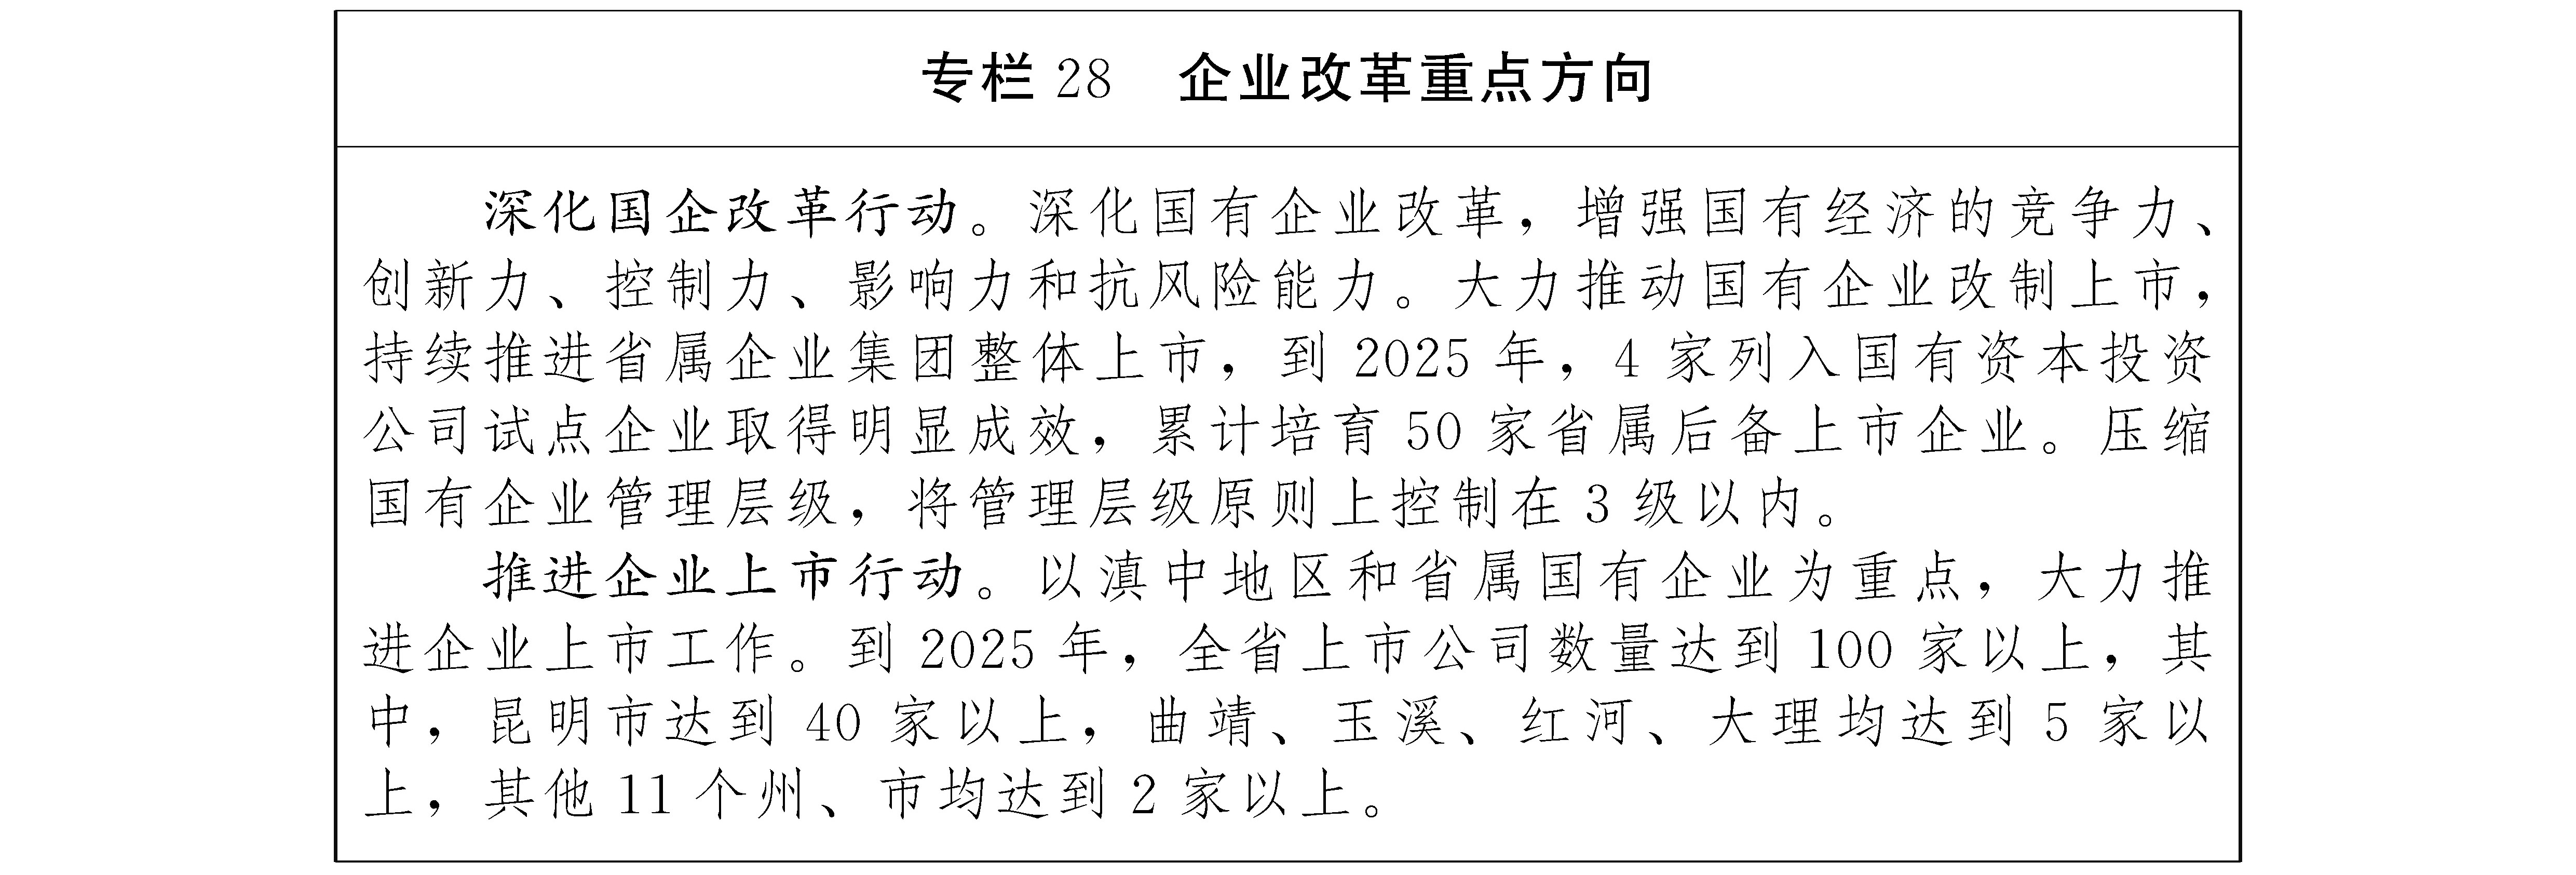 云南省人民政府关于印发云南省国民经济和社会发展第十四个五年规划和二〇三五年远景目标纲要的通知（云政发〔2021〕4号）20210208